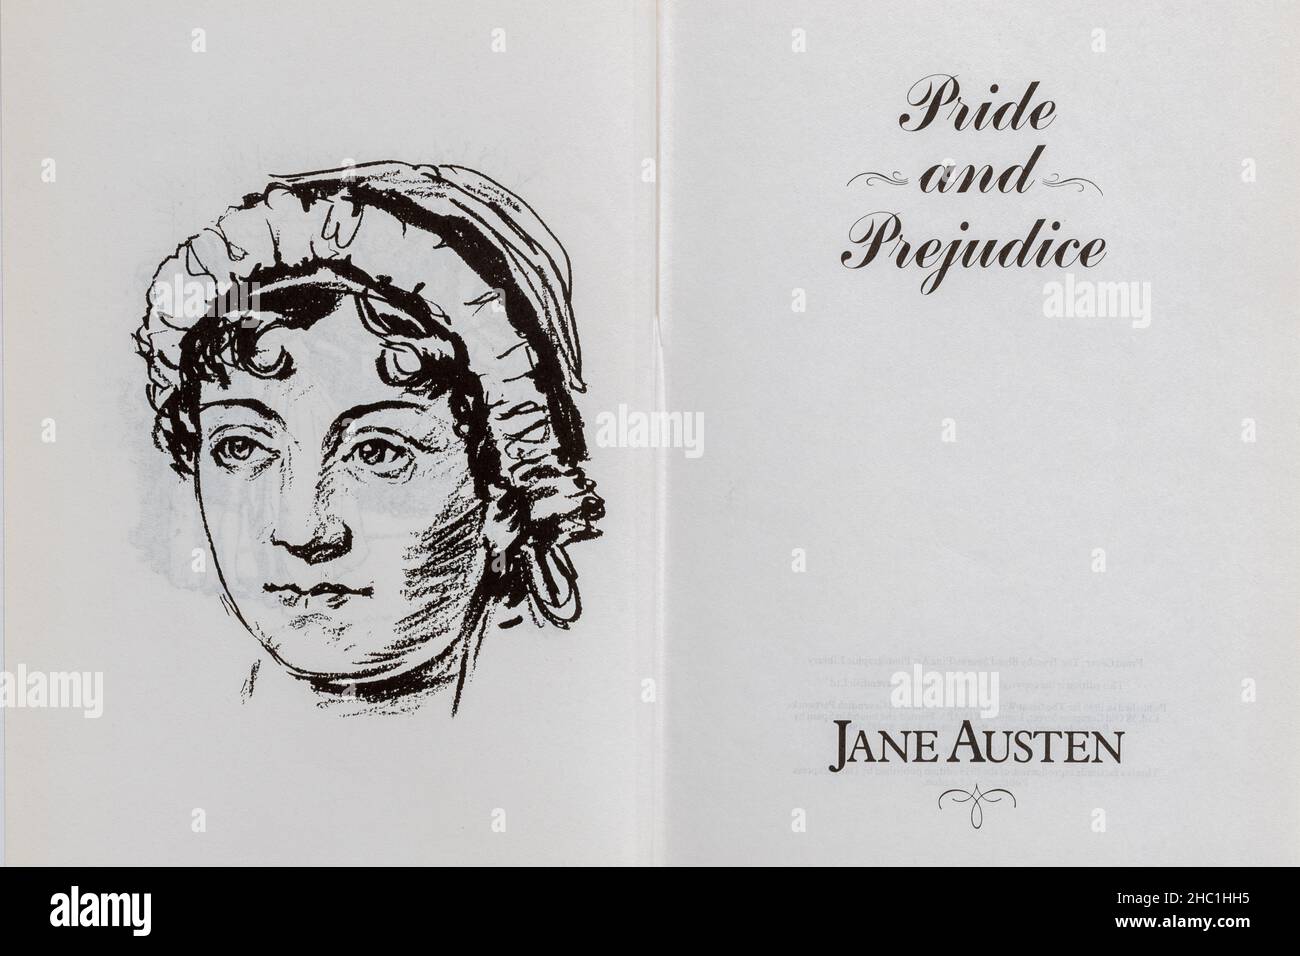 Livre de fierté et de préjugés - roman classique de Jane Austen.Page de titre et dessin de l'auteur. Banque D'Images